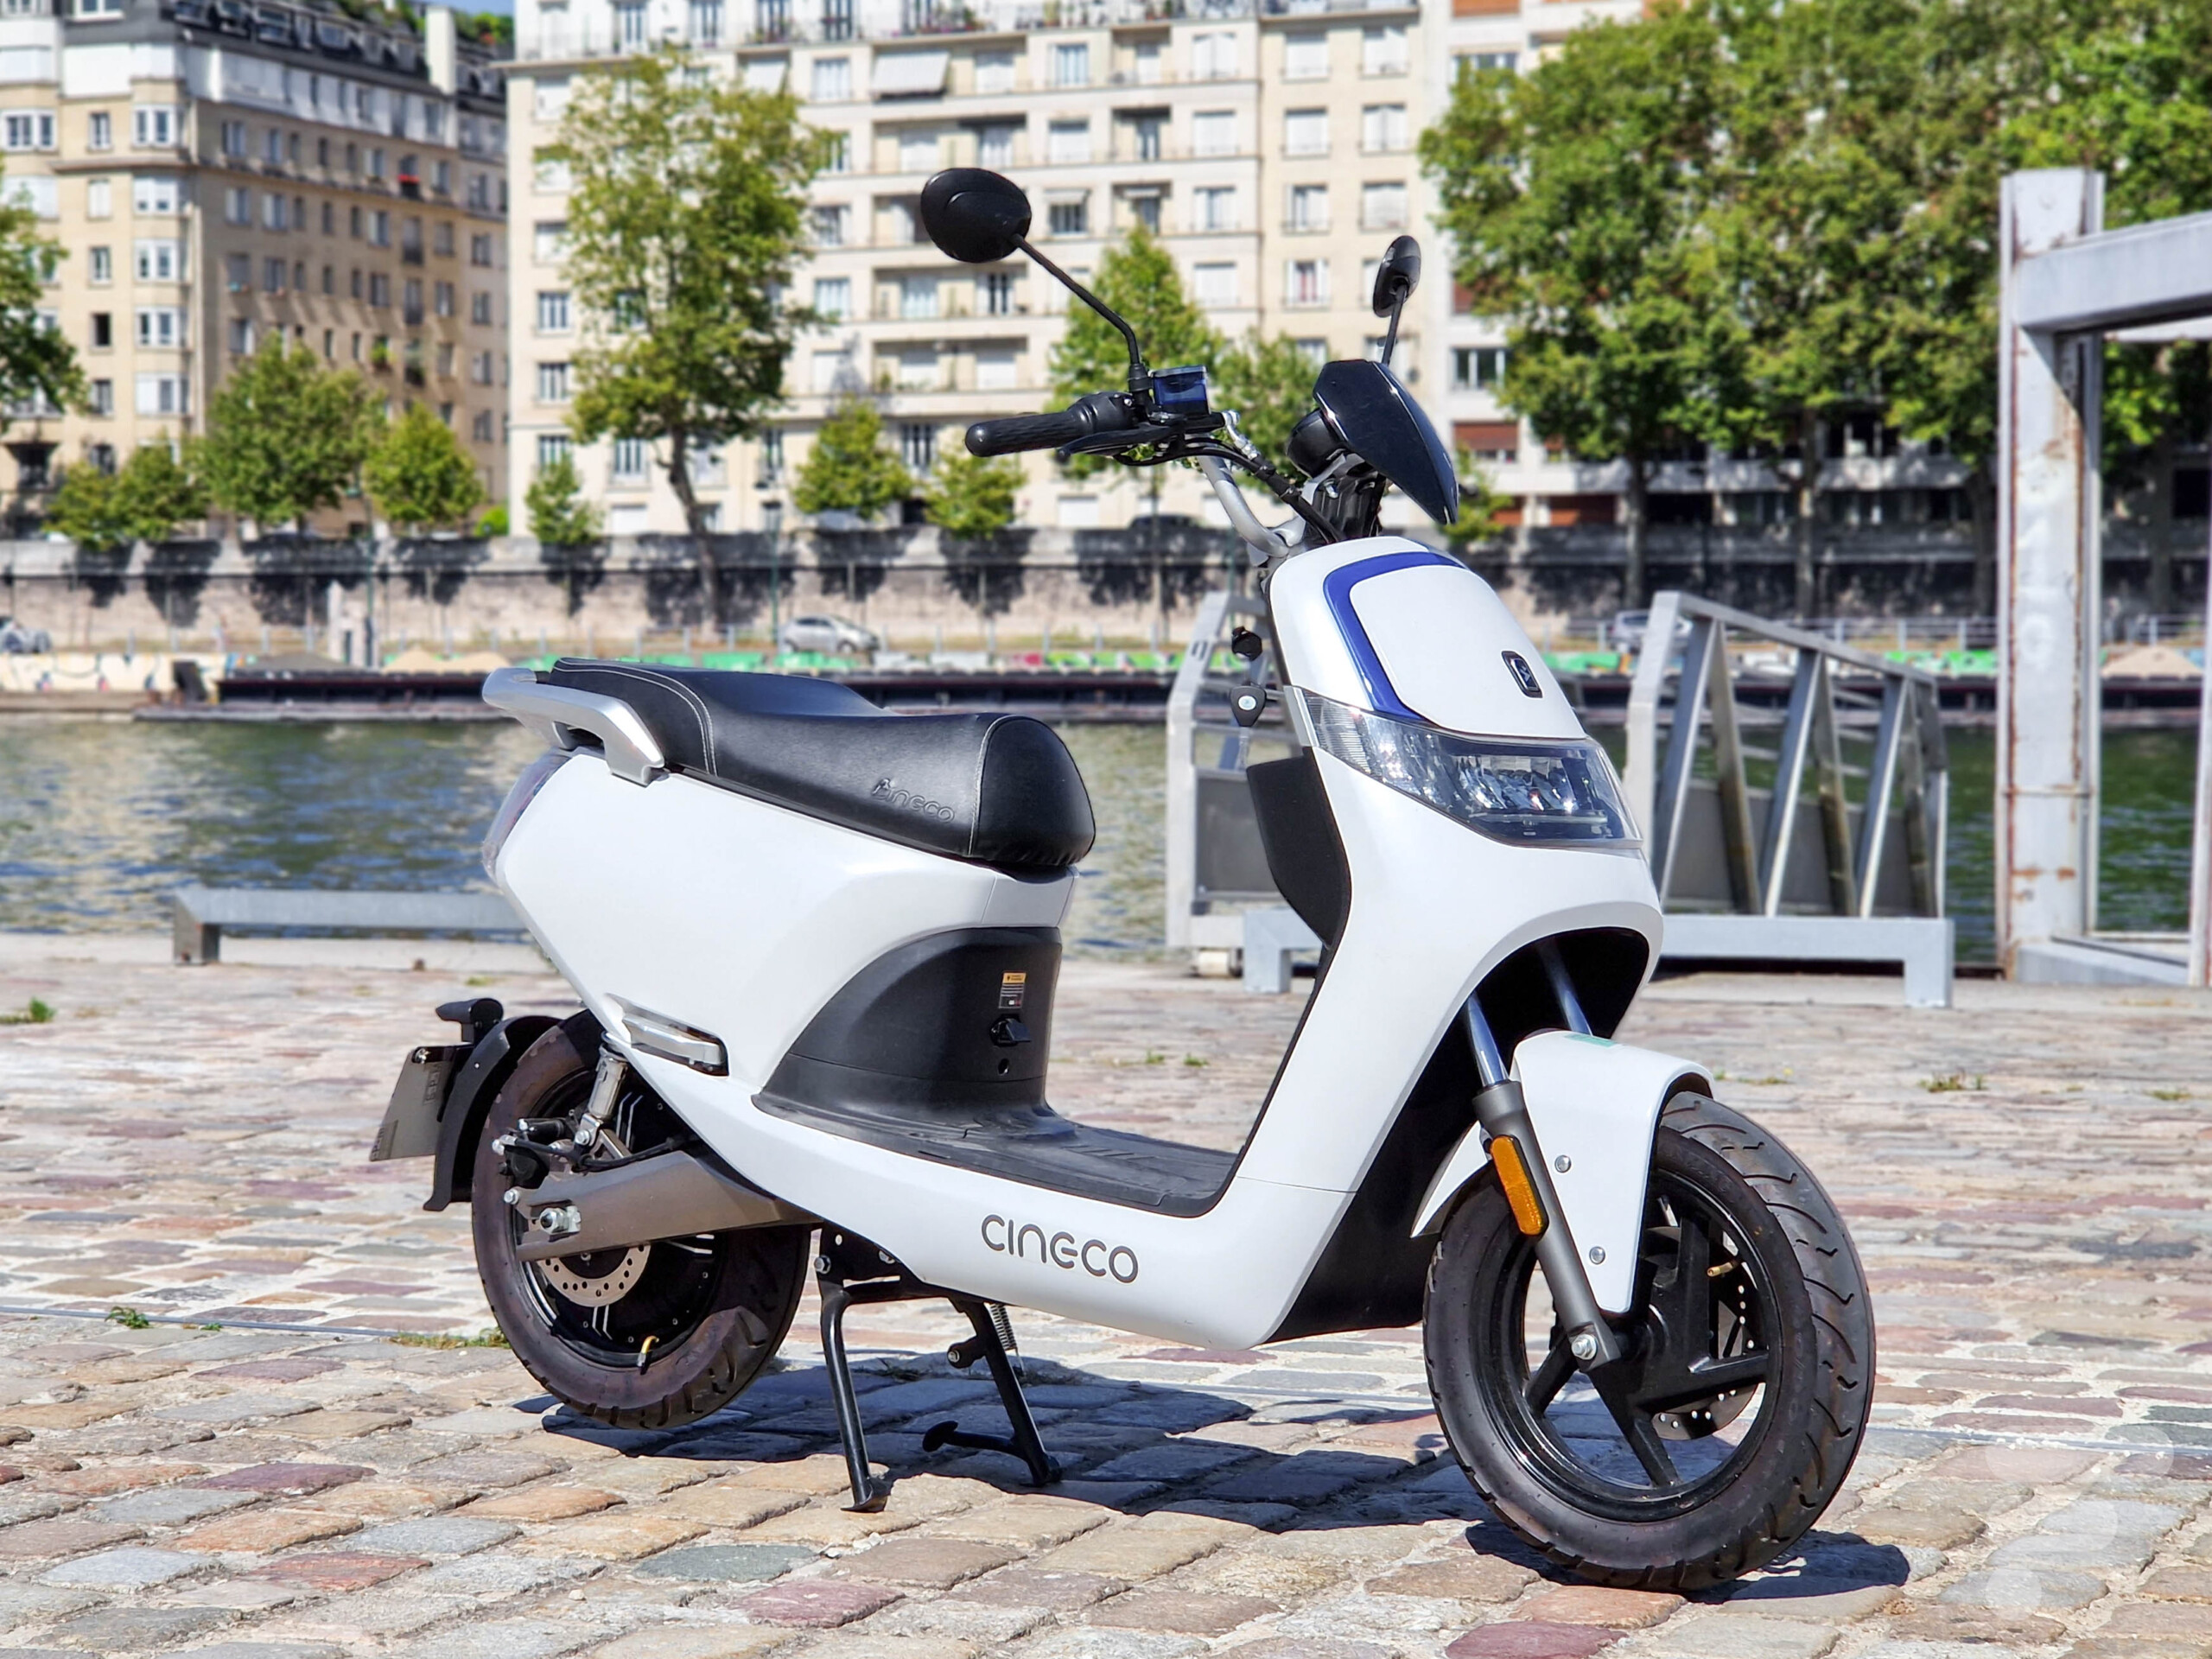 Essai du Cineco ES3 : un petit scooter électrique nerveux au possible, mais trop juste en autonomie